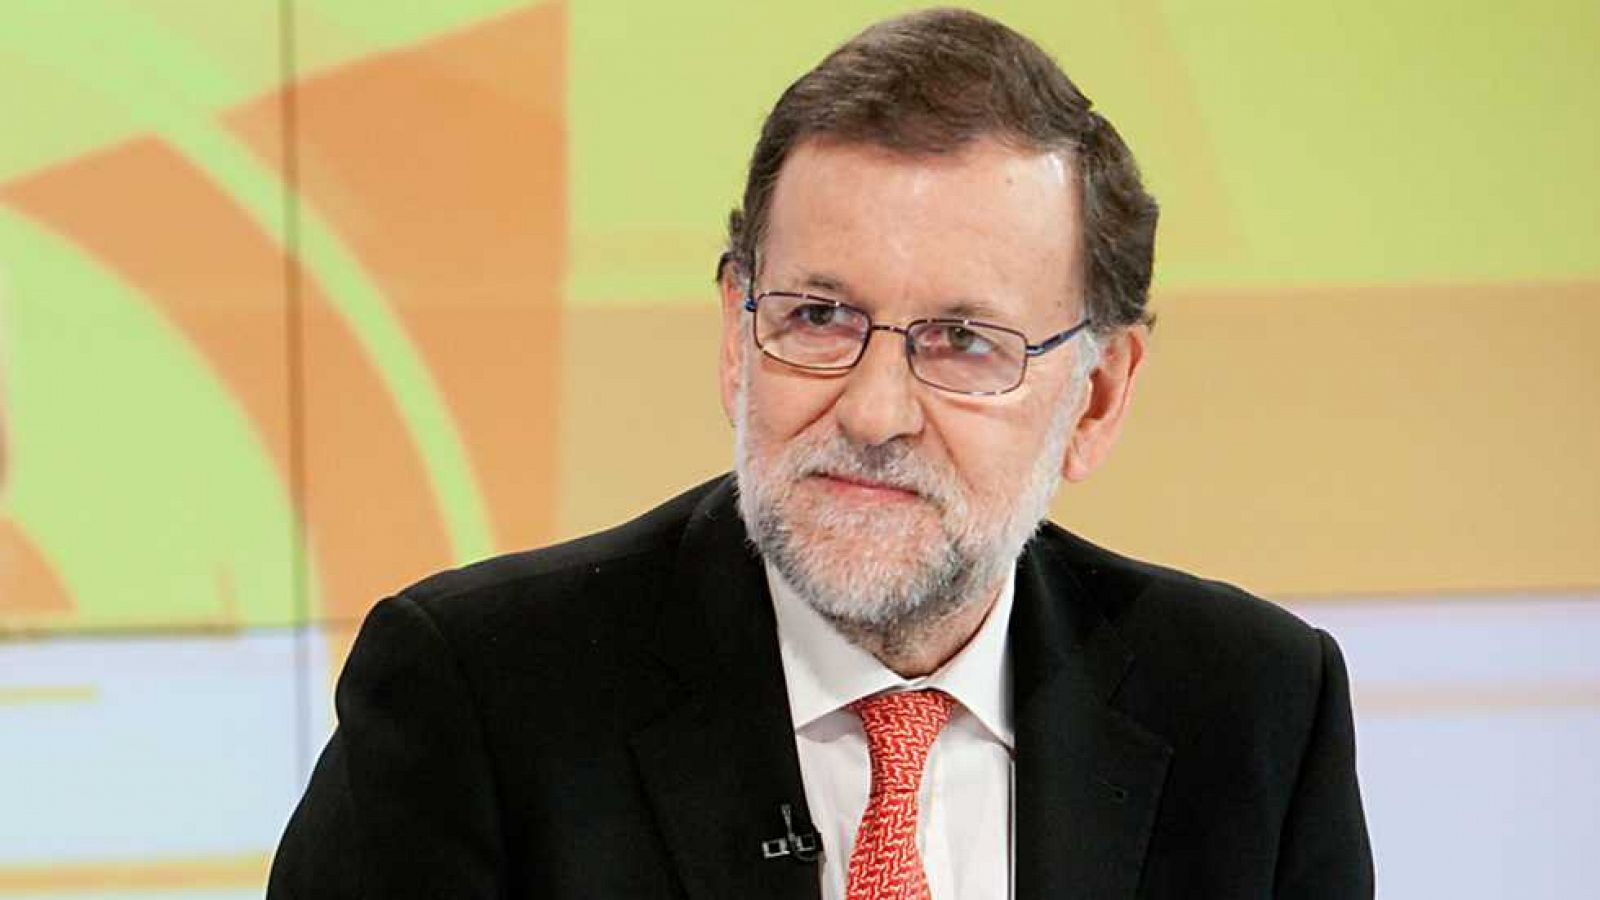 Los desayunos de TVE - Mariano Rajoy, candidato del PP a la presidencia del gobierno